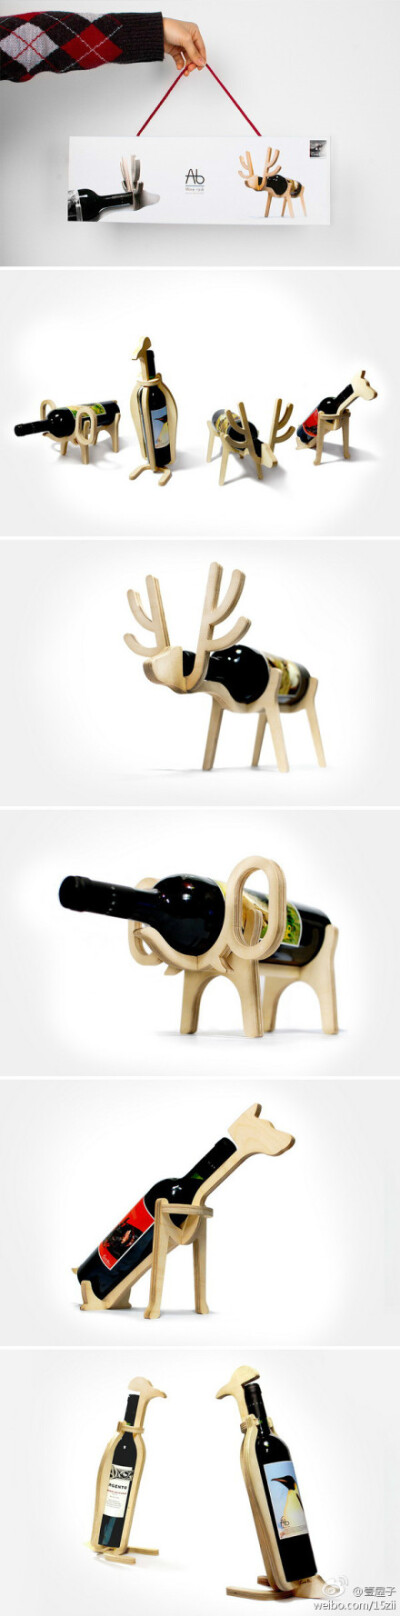 四款非常可爱的木制红酒架设计来自韩国设计机构Conte bleu。麋鹿、企鹅、大象和多伯曼短尾狗骨架造型坚固而又优雅，还能够与红酒瓶很好的融为一体，看上去十分有趣可爱，很有创意。